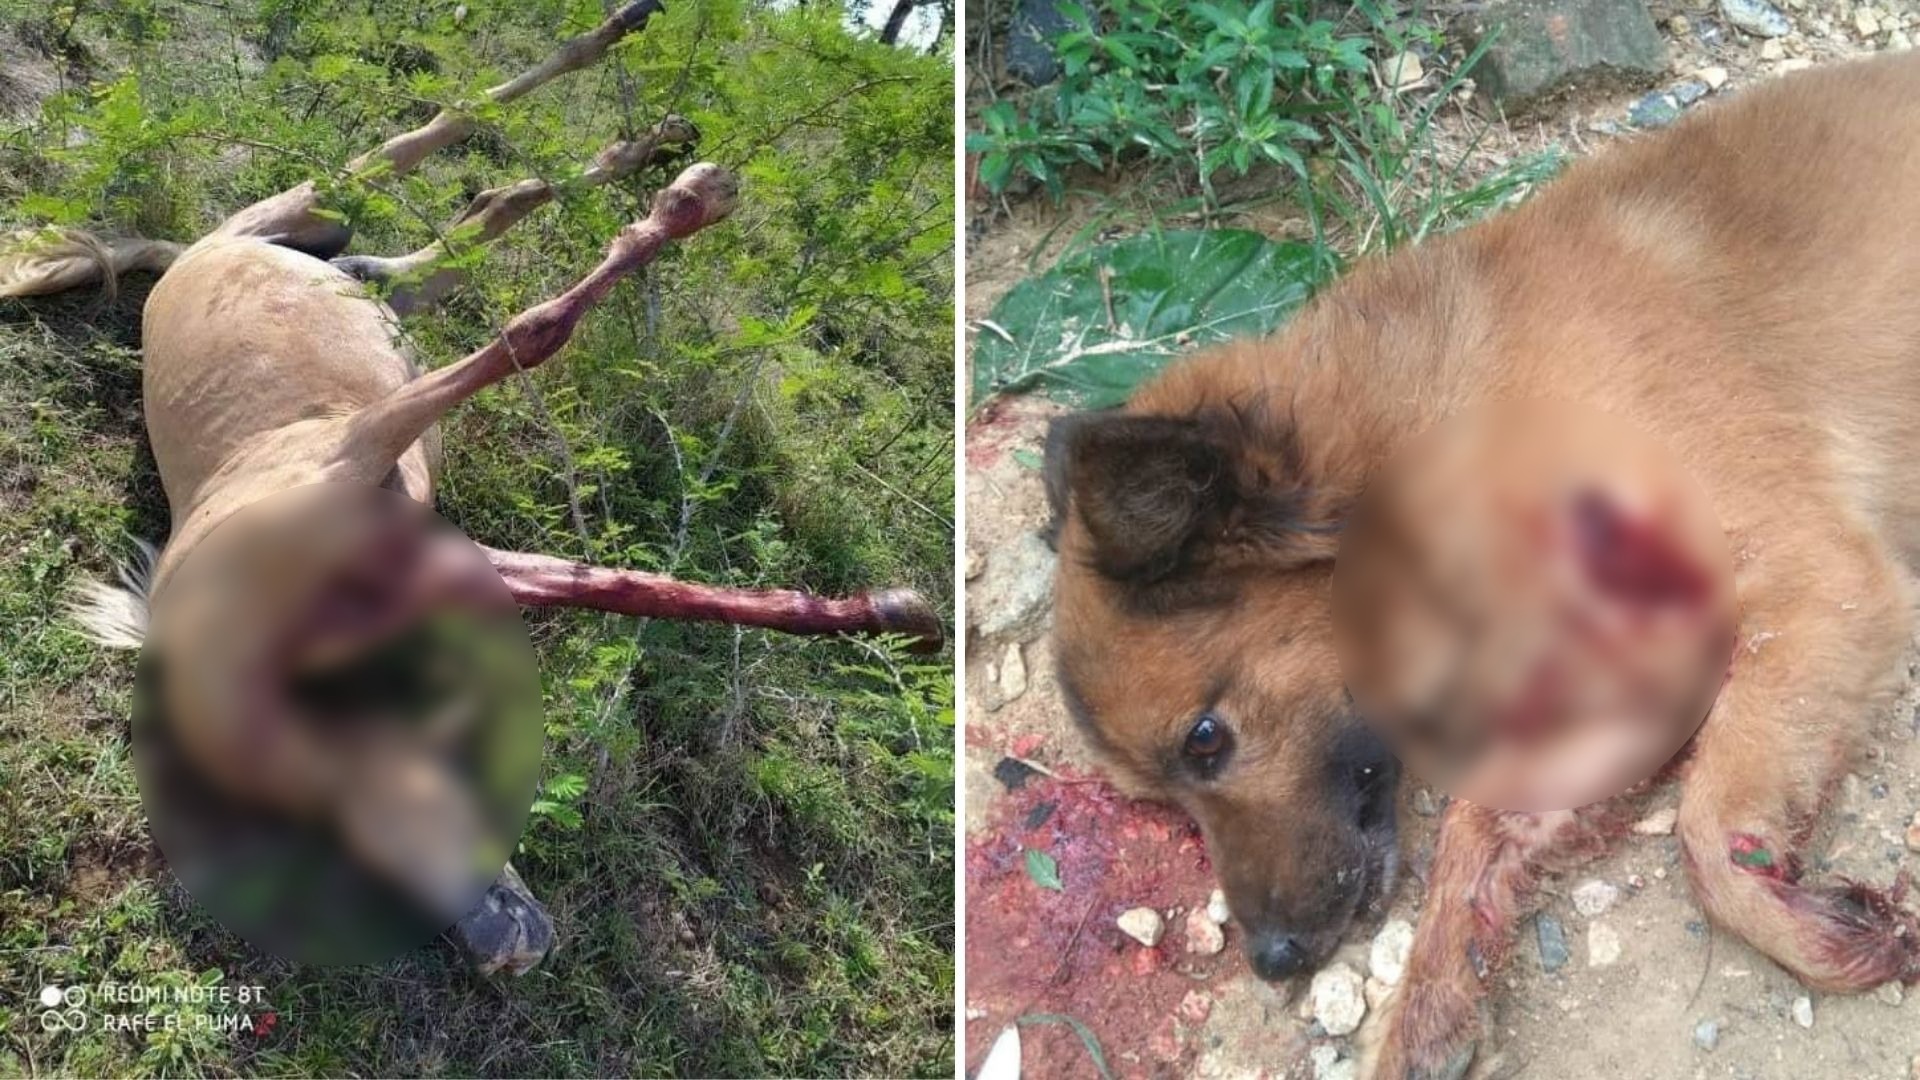 Un usuario en Twitter difundió la imagen del perro con una herida en su pecho e hizo un llamado a los protectores de animales de la zona para que lo rescataran